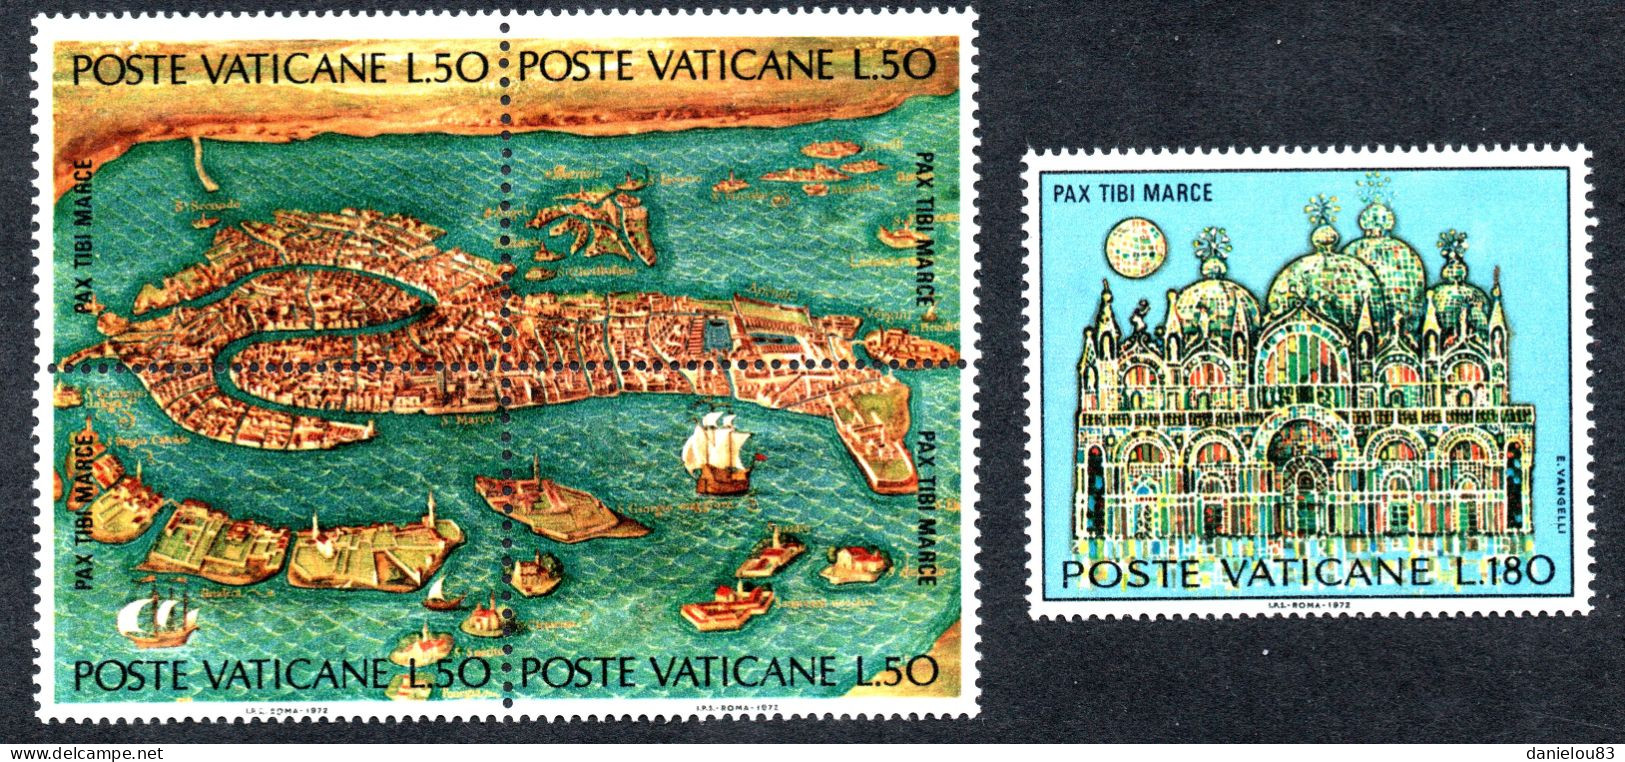 Timbres VATICAN - Série SAUVEZ VENISE - N° Yvert 537/541 Neufs** Année 1972 - Unused Stamps